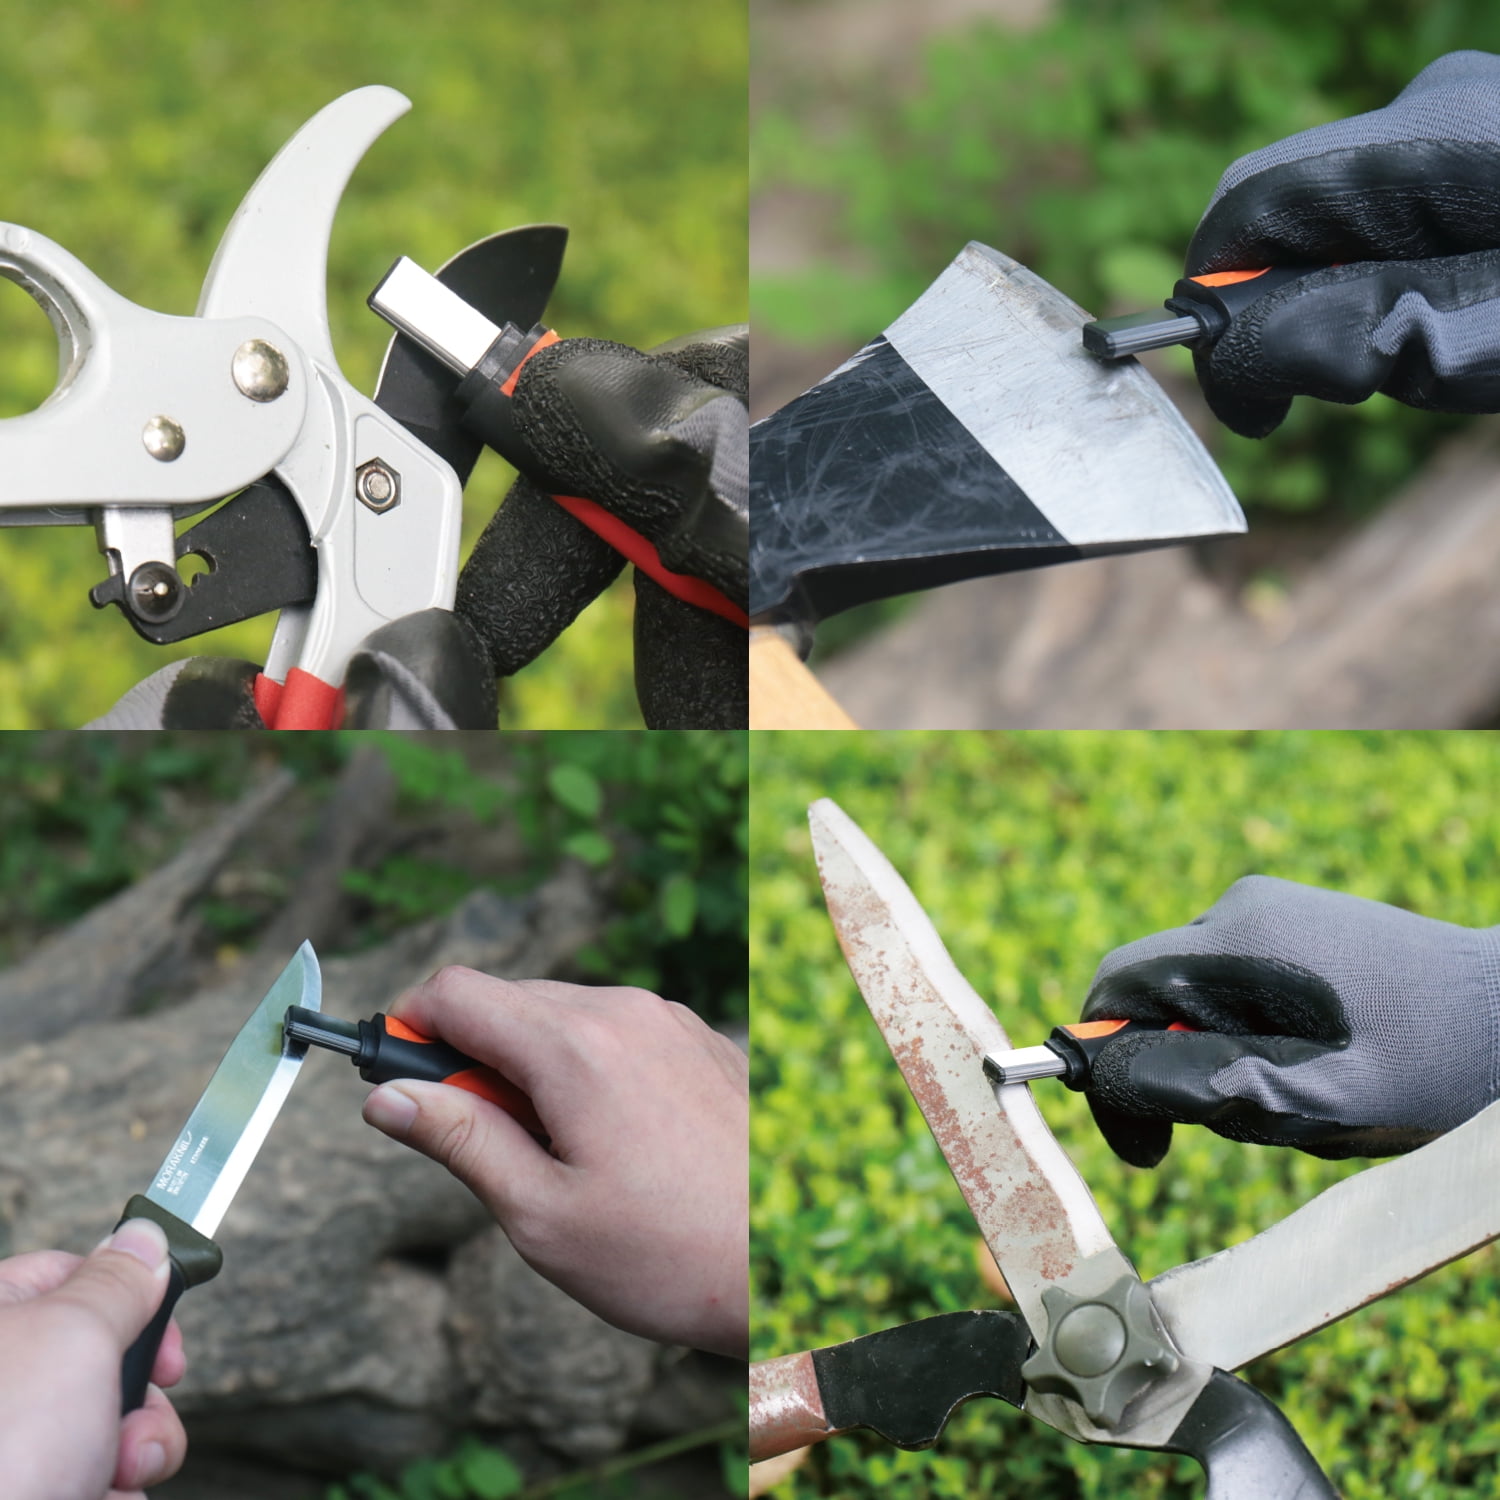 Orange Ninja All-in-1 Garden Tool & Knife Sharpener for Lawn Mower Blade,Scissors, Axe, Hatchet, Machete, Pruner, Hedge Shears by Sharp Pebble